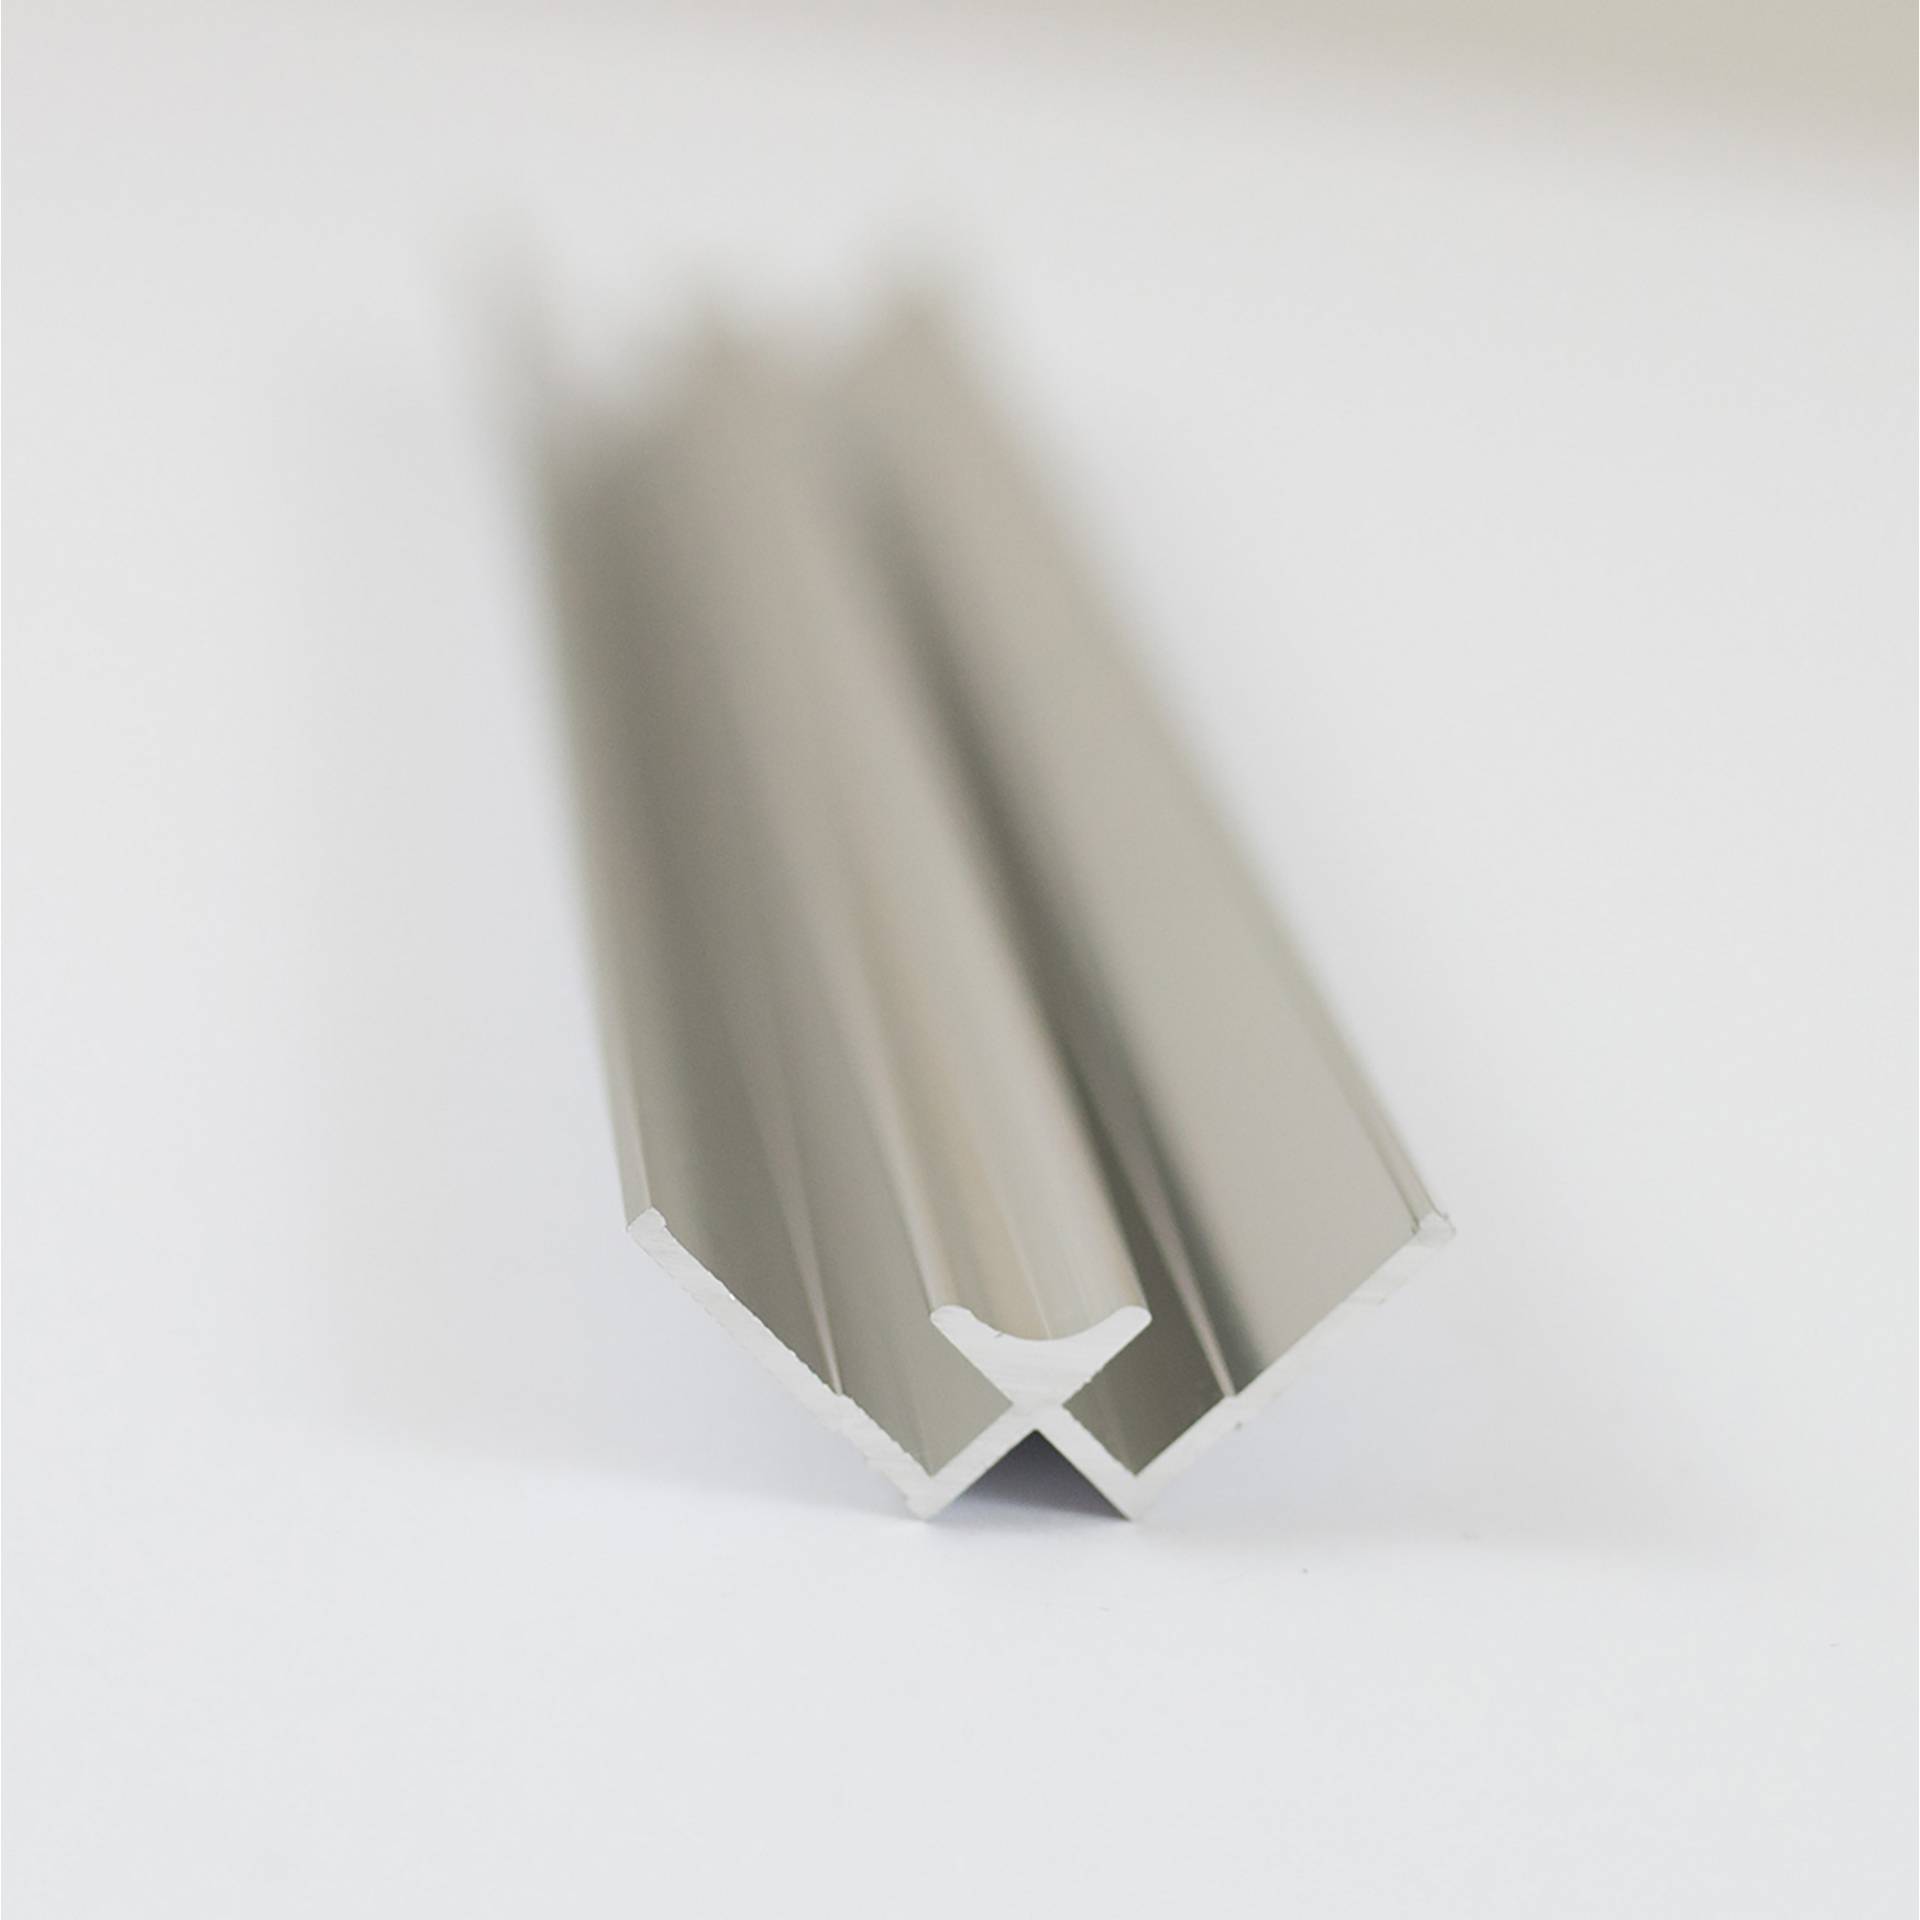 Breuer Verbindungsprofil für Rückwandplatten, Ecke innen, alu chromeffekt, 2550 mm von Breuer